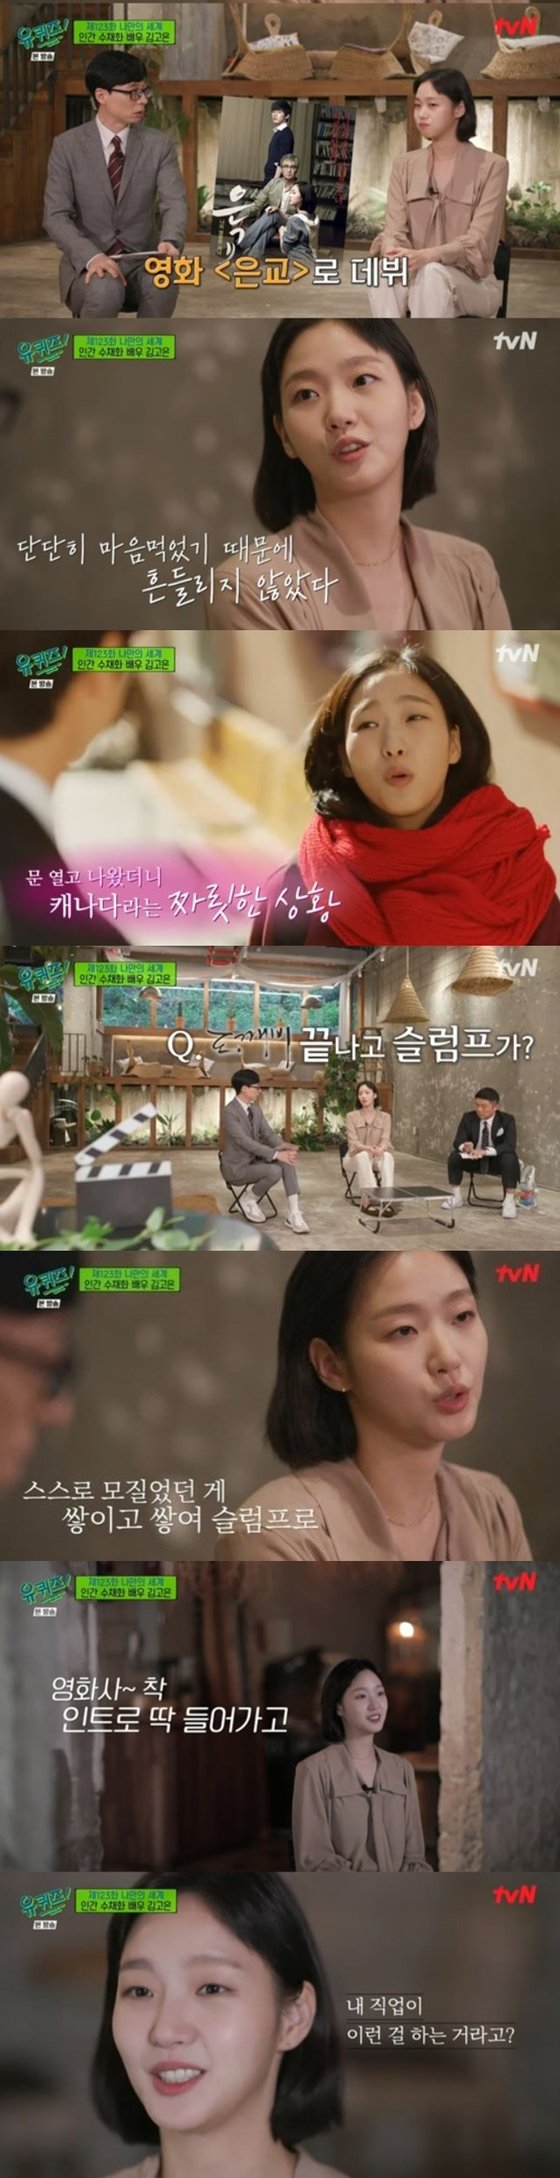 15일 방송된 tvN 예능 '유 퀴즈 온 더 블럭' 캡처 화면